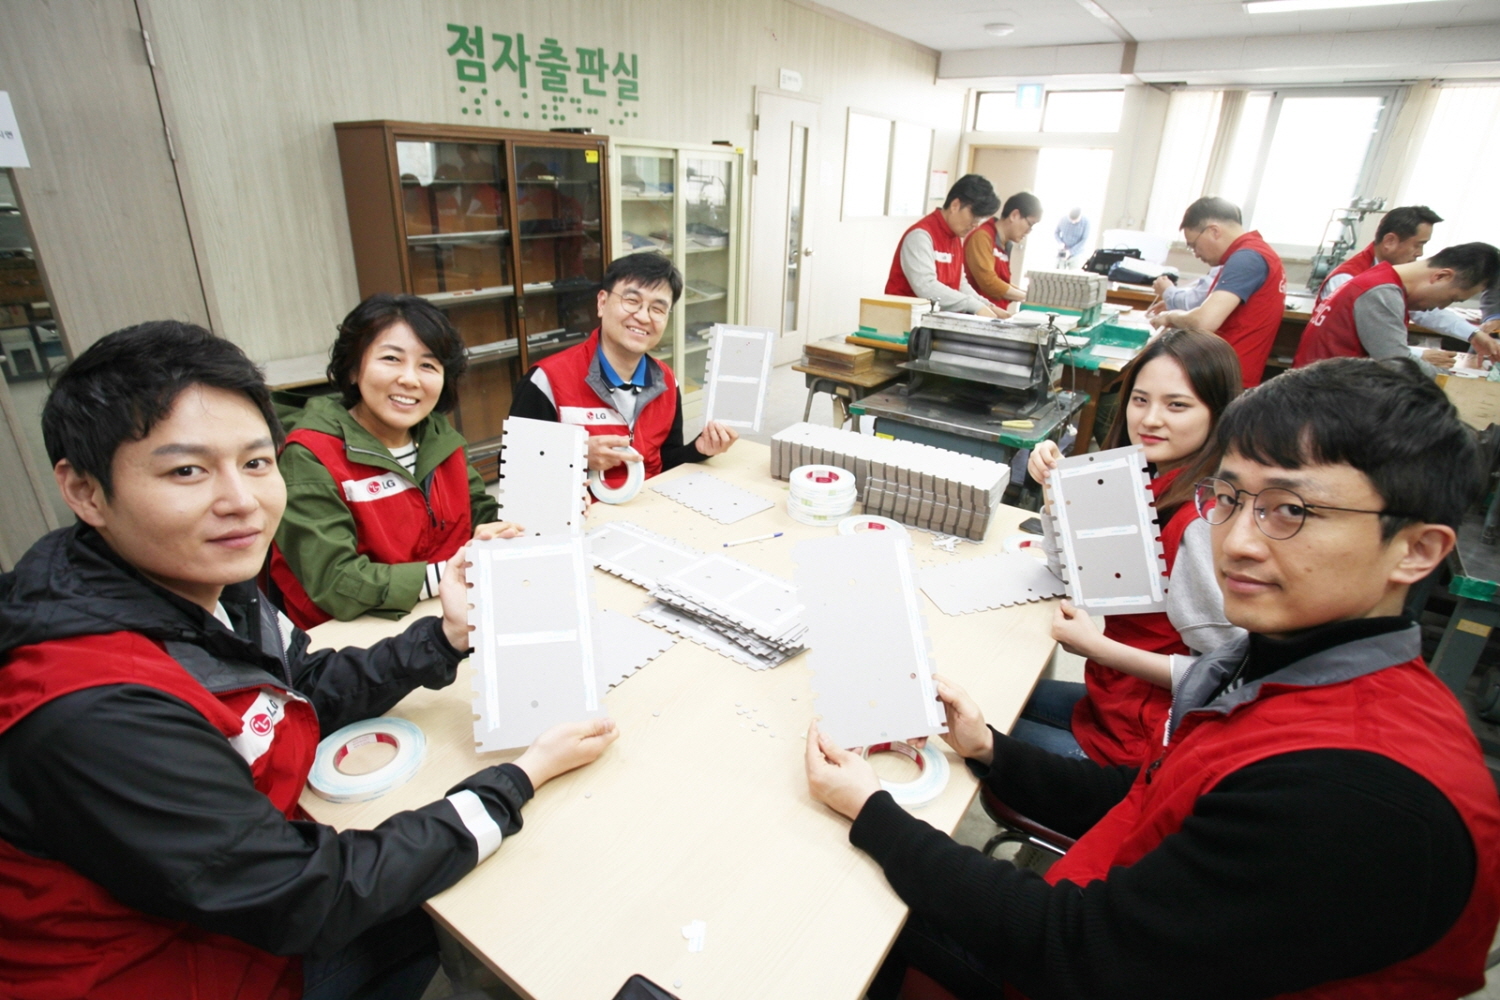 LG전자 임직원 20여 명은 17일 장애인의 날(4월 20일)을 기념해 서울 강동구에 위치한 한국시각장애인복지관을 방문해 시청각장애인용 TV를 기증하고 점자판을 만드는 봉사활동을 진행했다. 